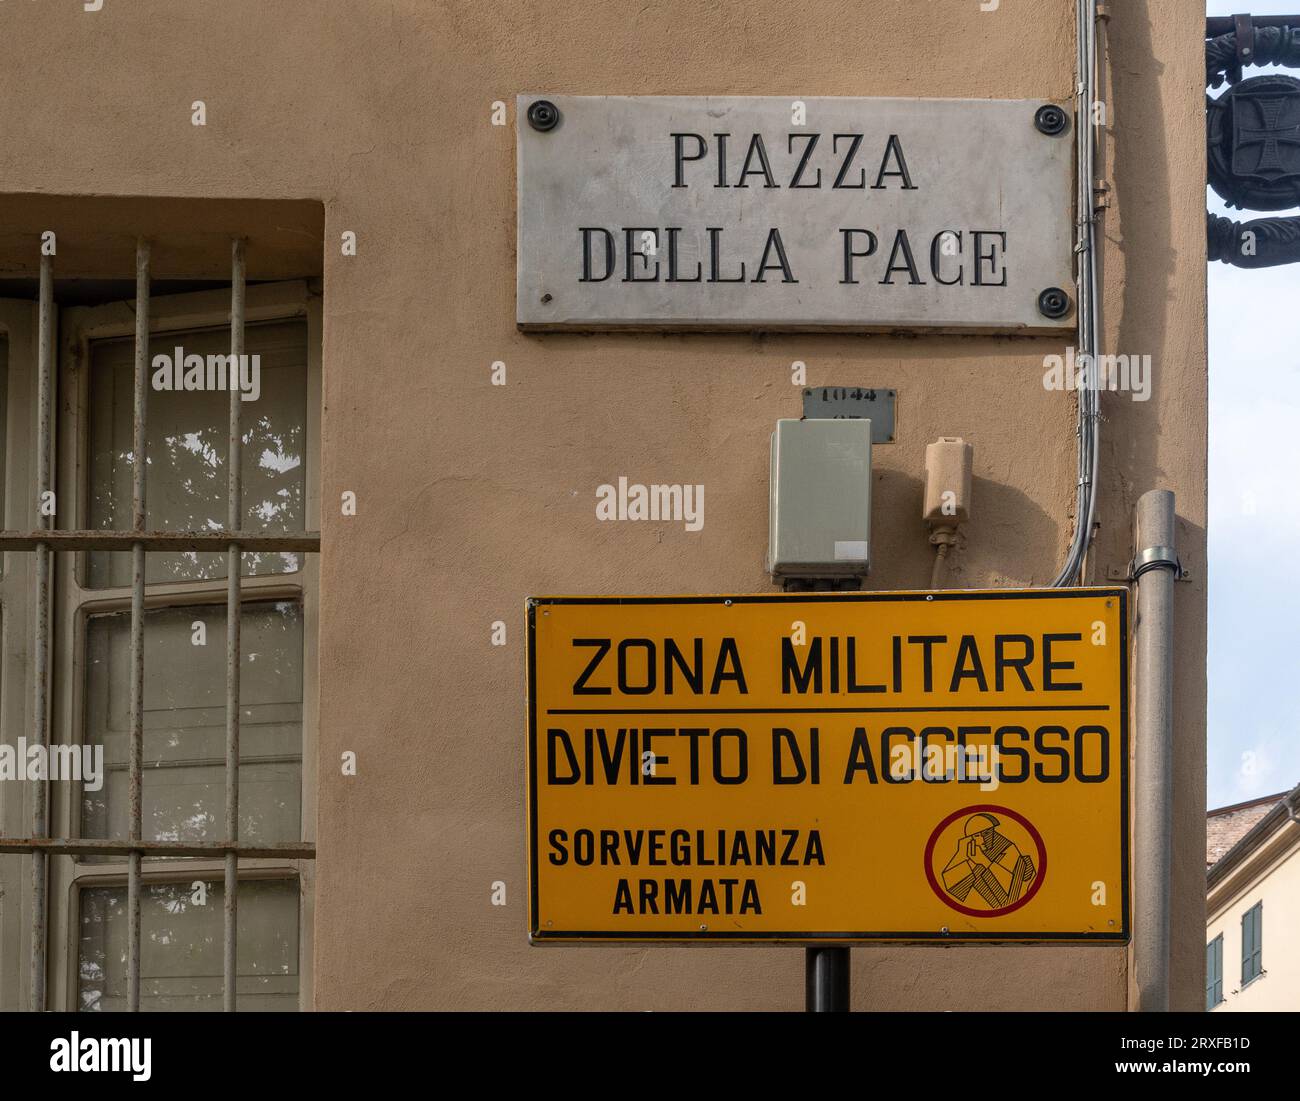 Contraste entre le panneau de Piazza della Pace ("place de la paix") et un panneau qui dit "zone militaire, pas d'accès, surveillance armée", Parme, Italie Banque D'Images